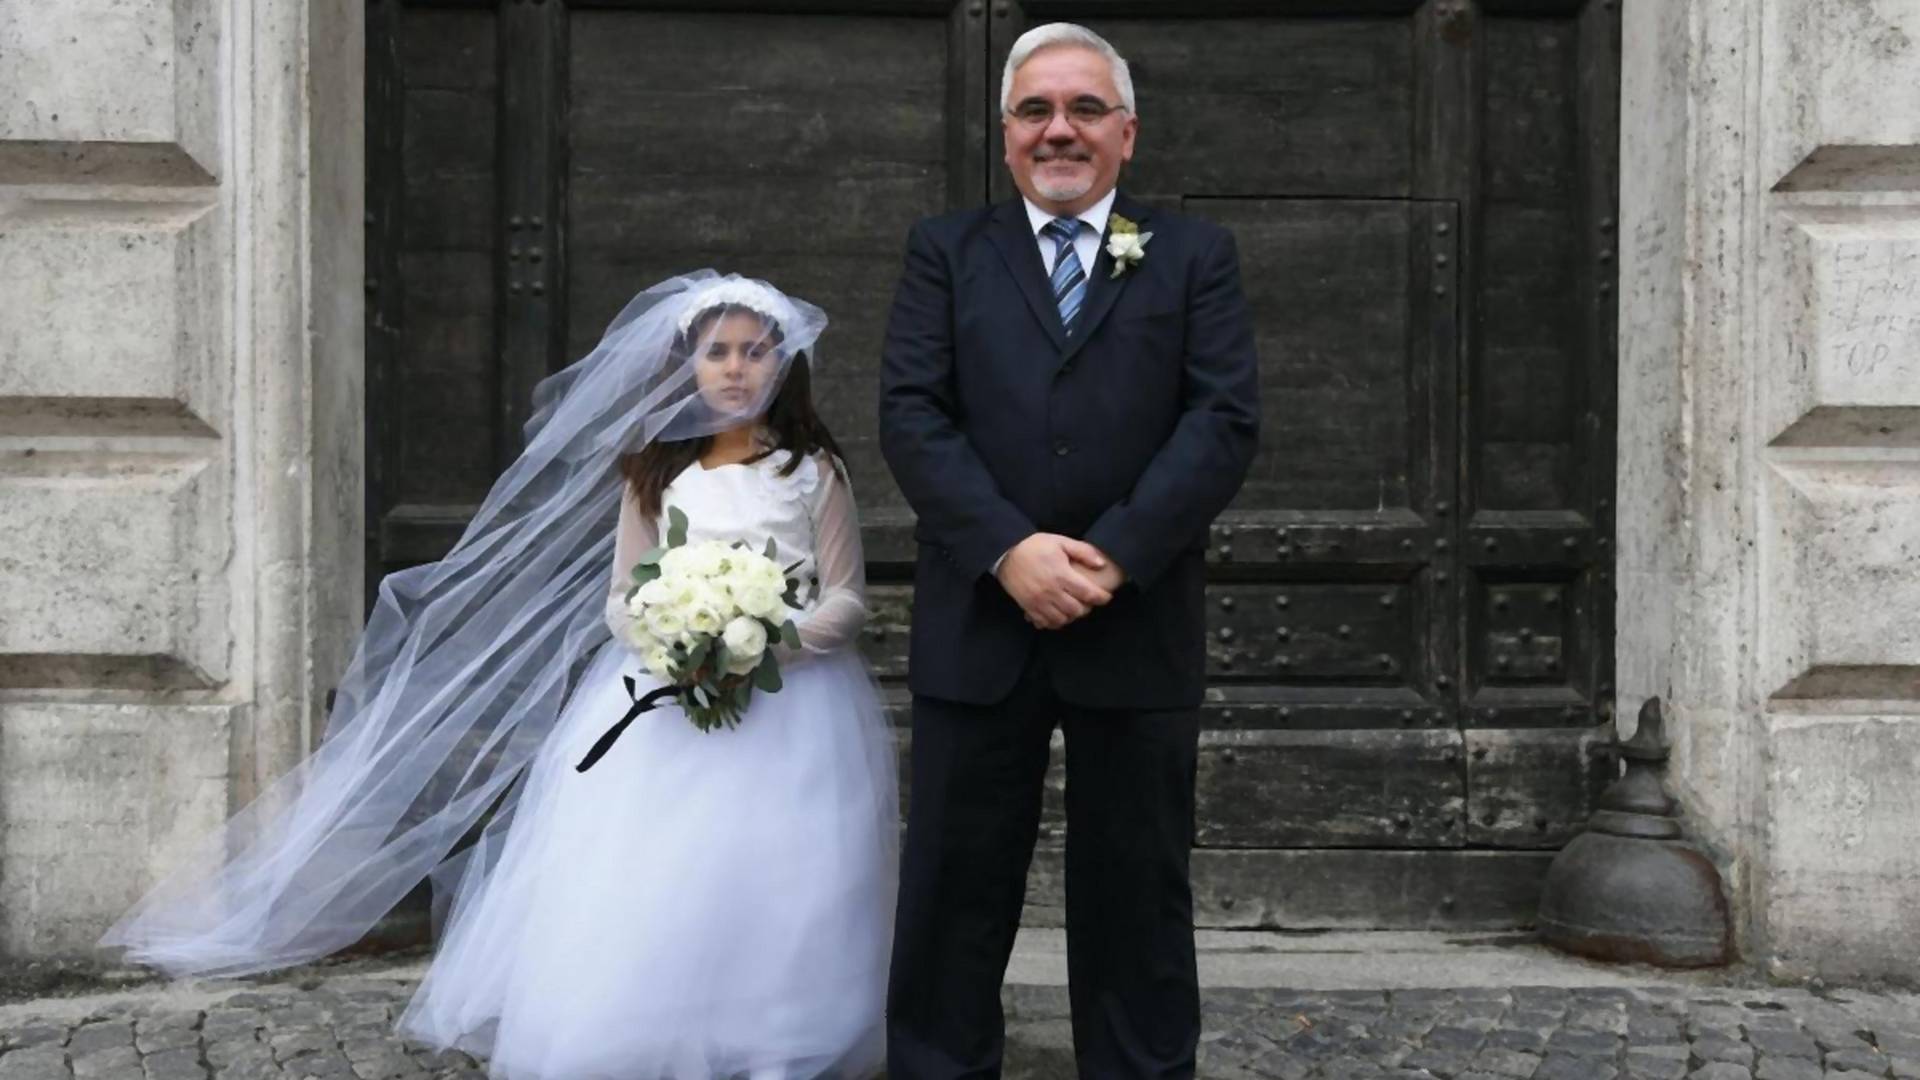 Gyerekek százai házasodnak évente Magyarországon, és Európában sem jobb a helyzet